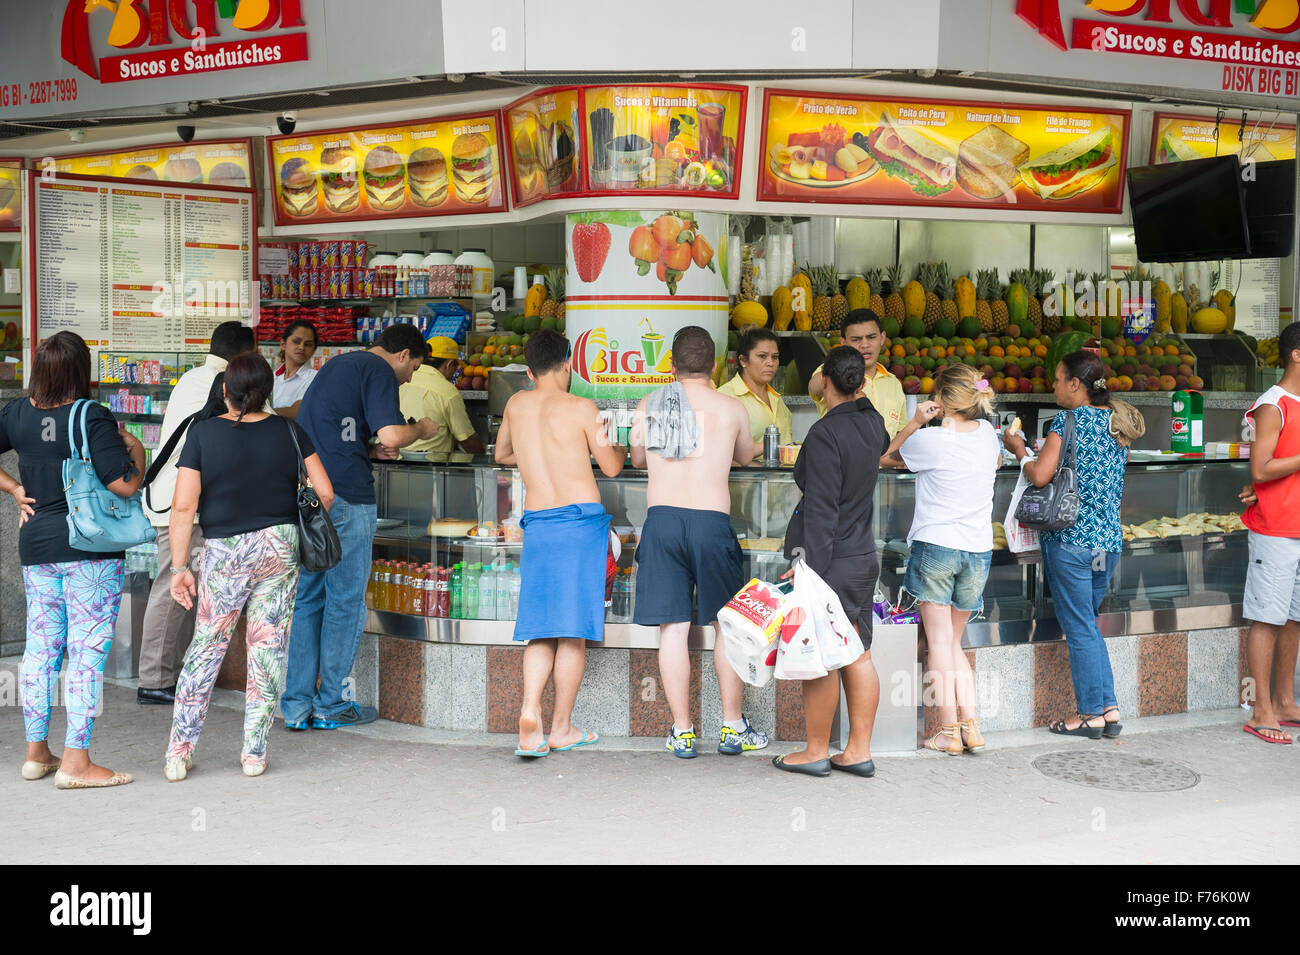 RIO DE JANEIRO, Brésil - 25 octobre 2015 : Les clients se réunissent au stand jus typiquement brésilien dans le quartier d'Ipanema. Banque D'Images